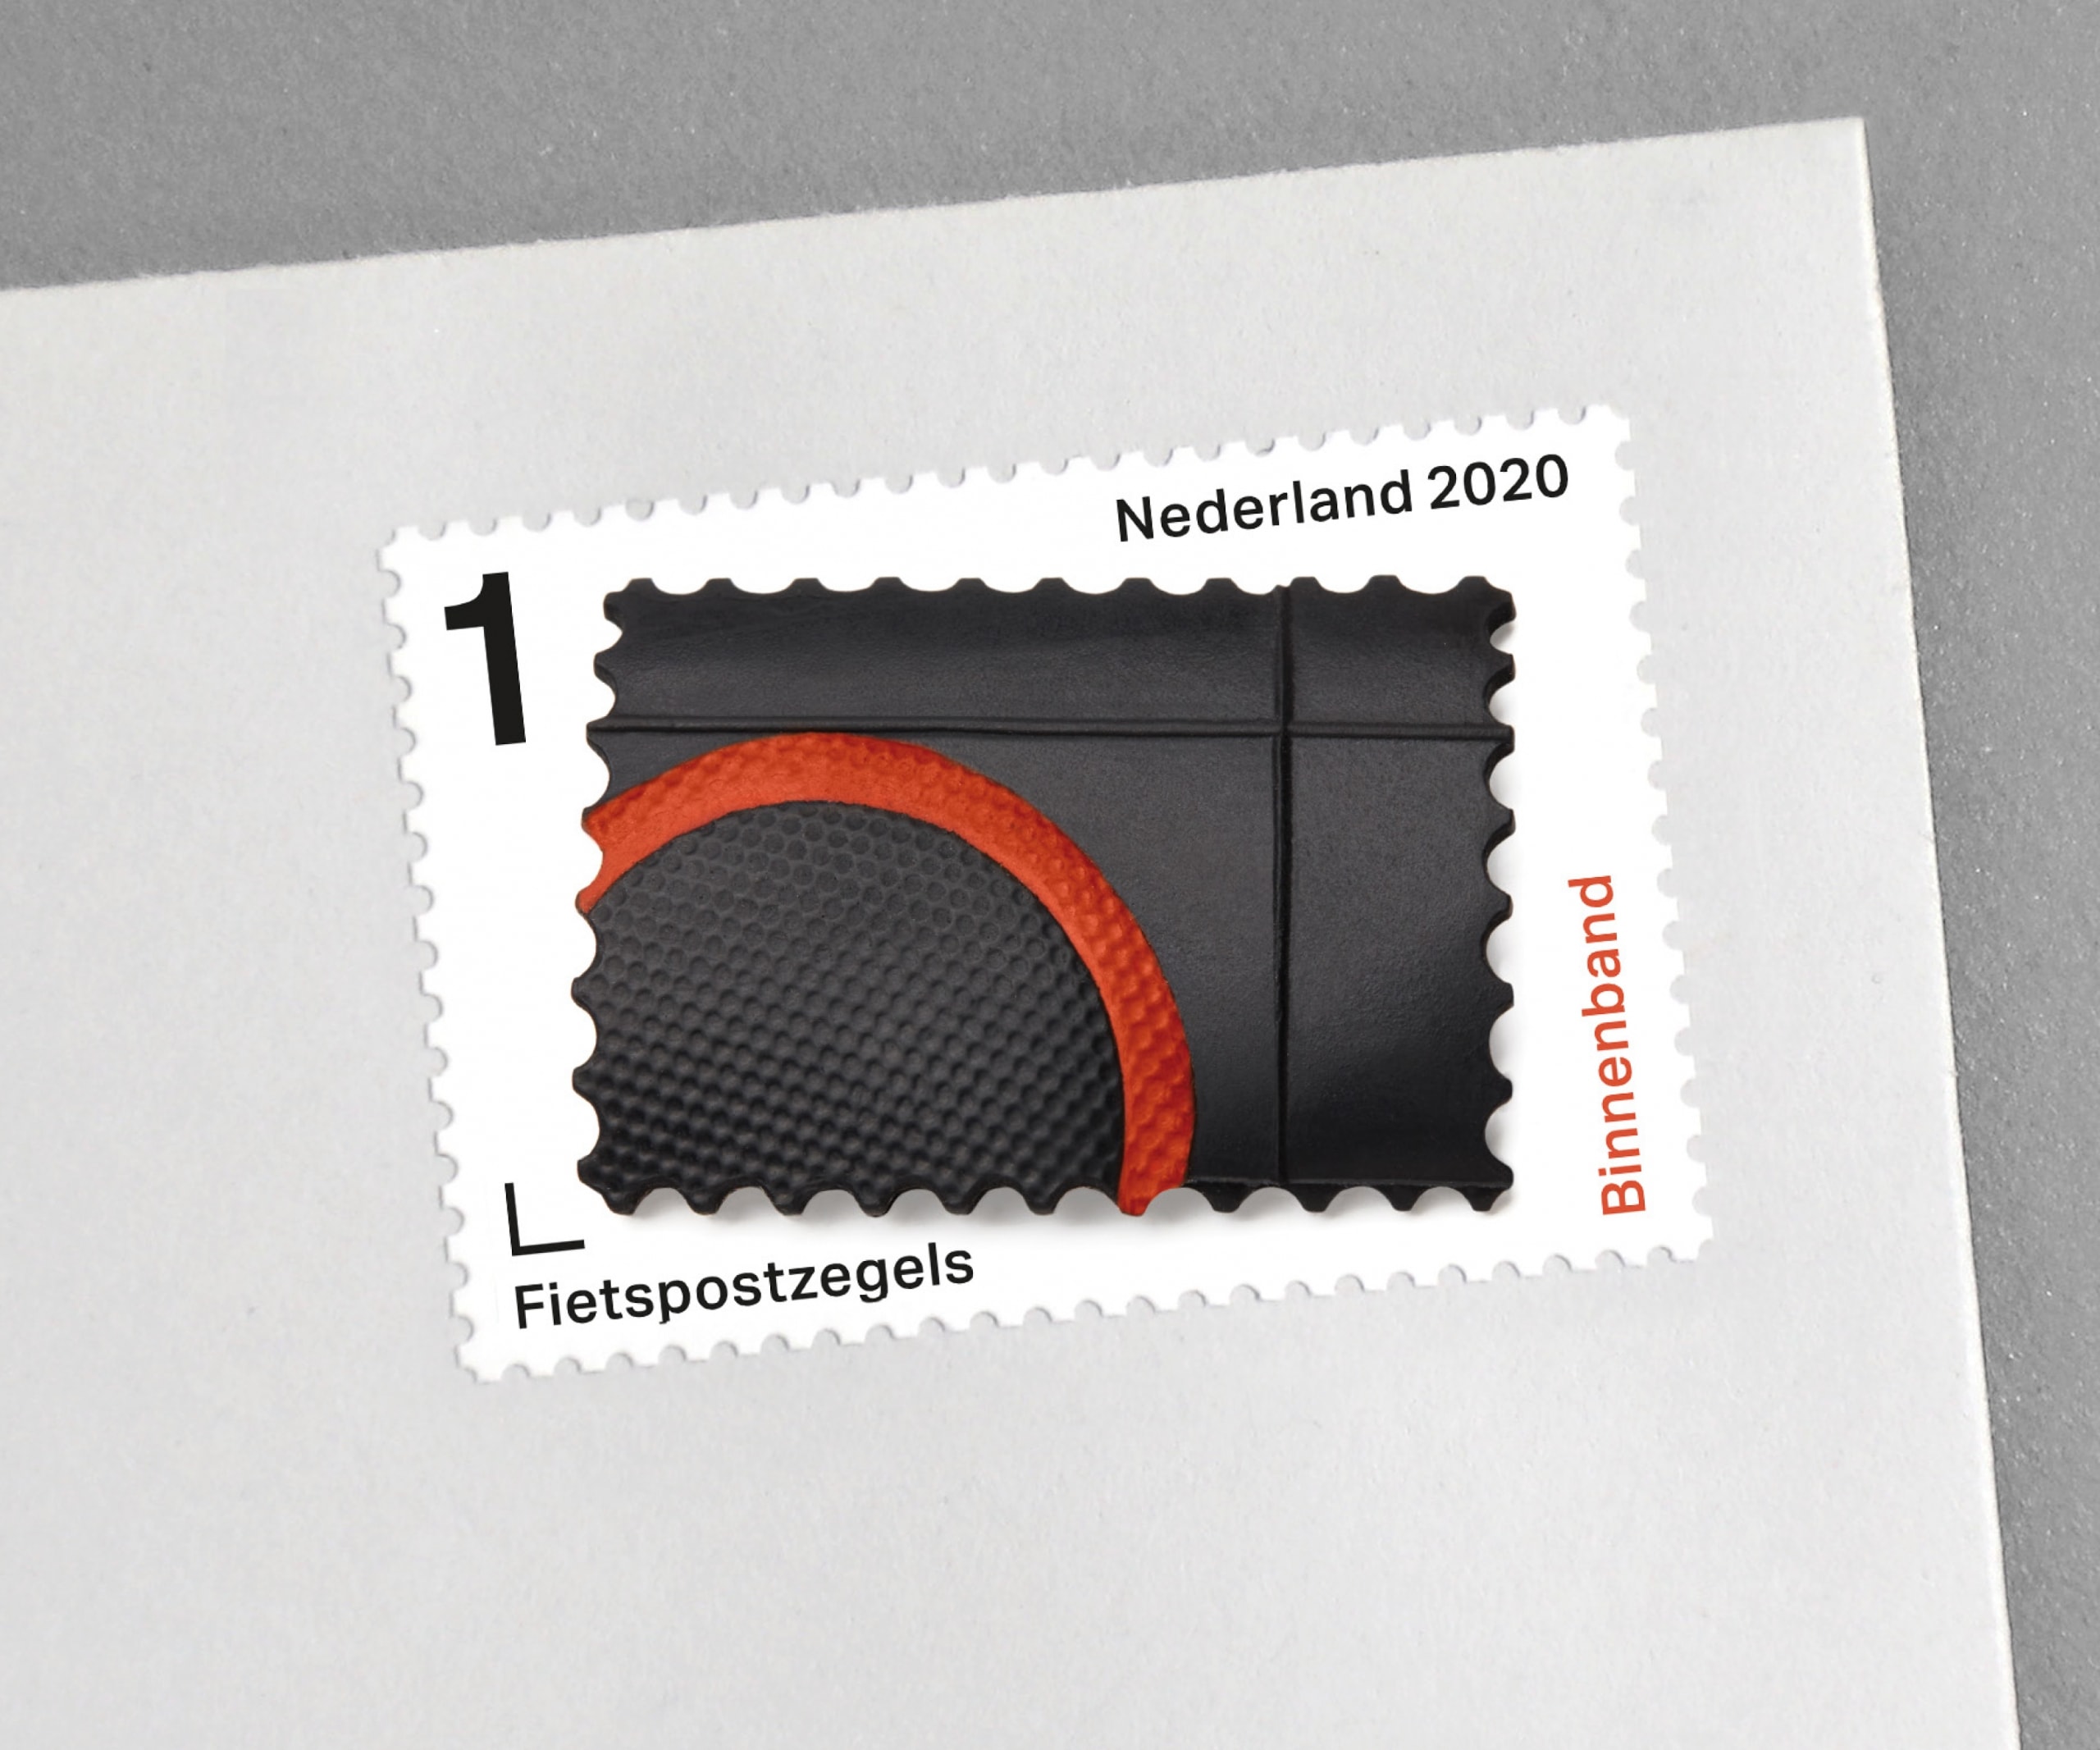 Studio Sander Plug – Stamp